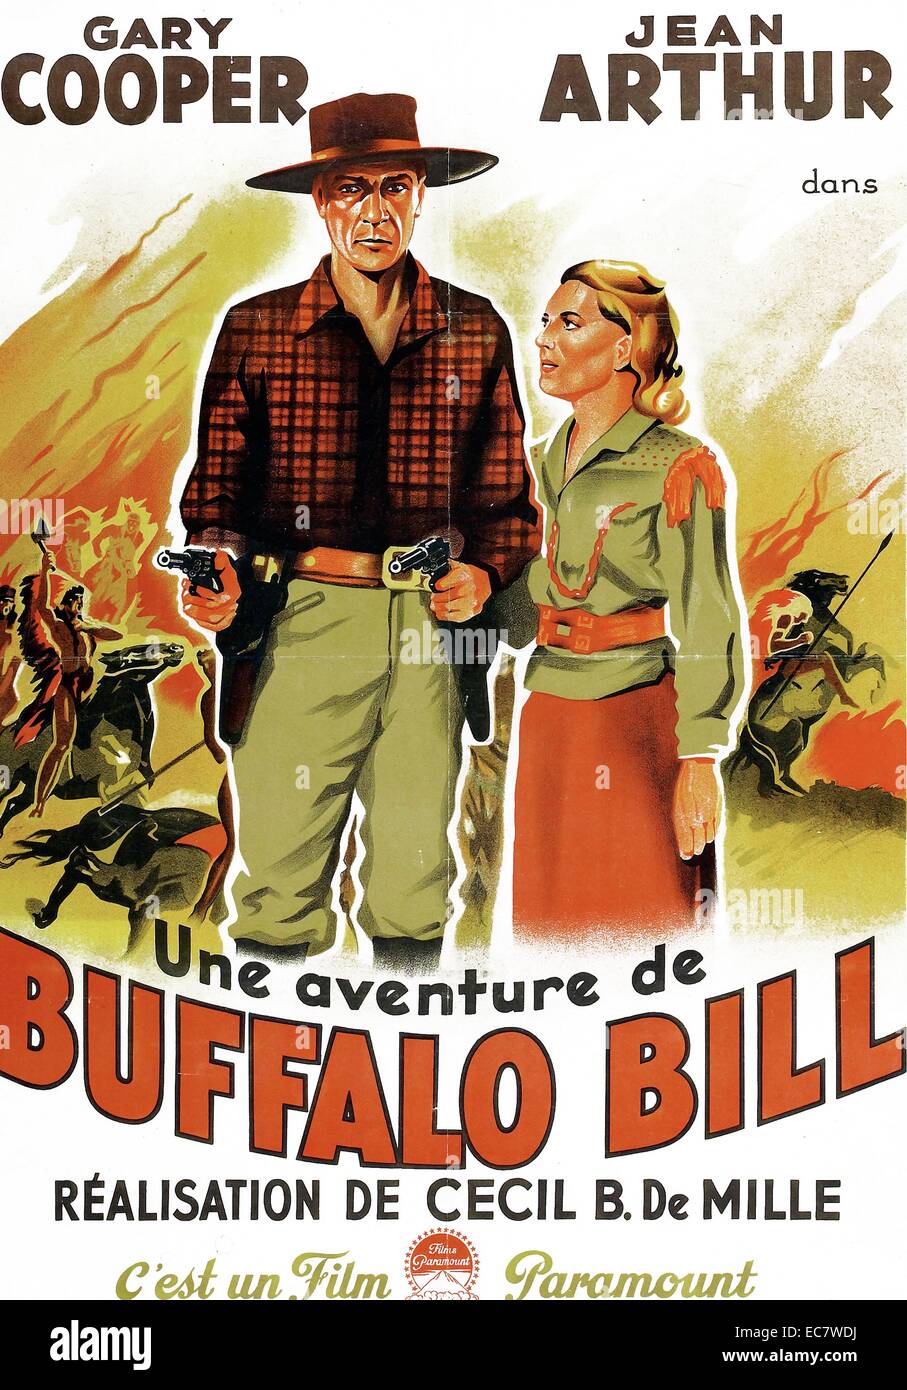 El 1936 es un Plainsman Oeste Americano película dirigida por Cecil B.  DeMille y protagonizada por Gary Cooper y Jean Arthur. La película presenta  un gran fictionalized cuenta las aventuras y relaciones